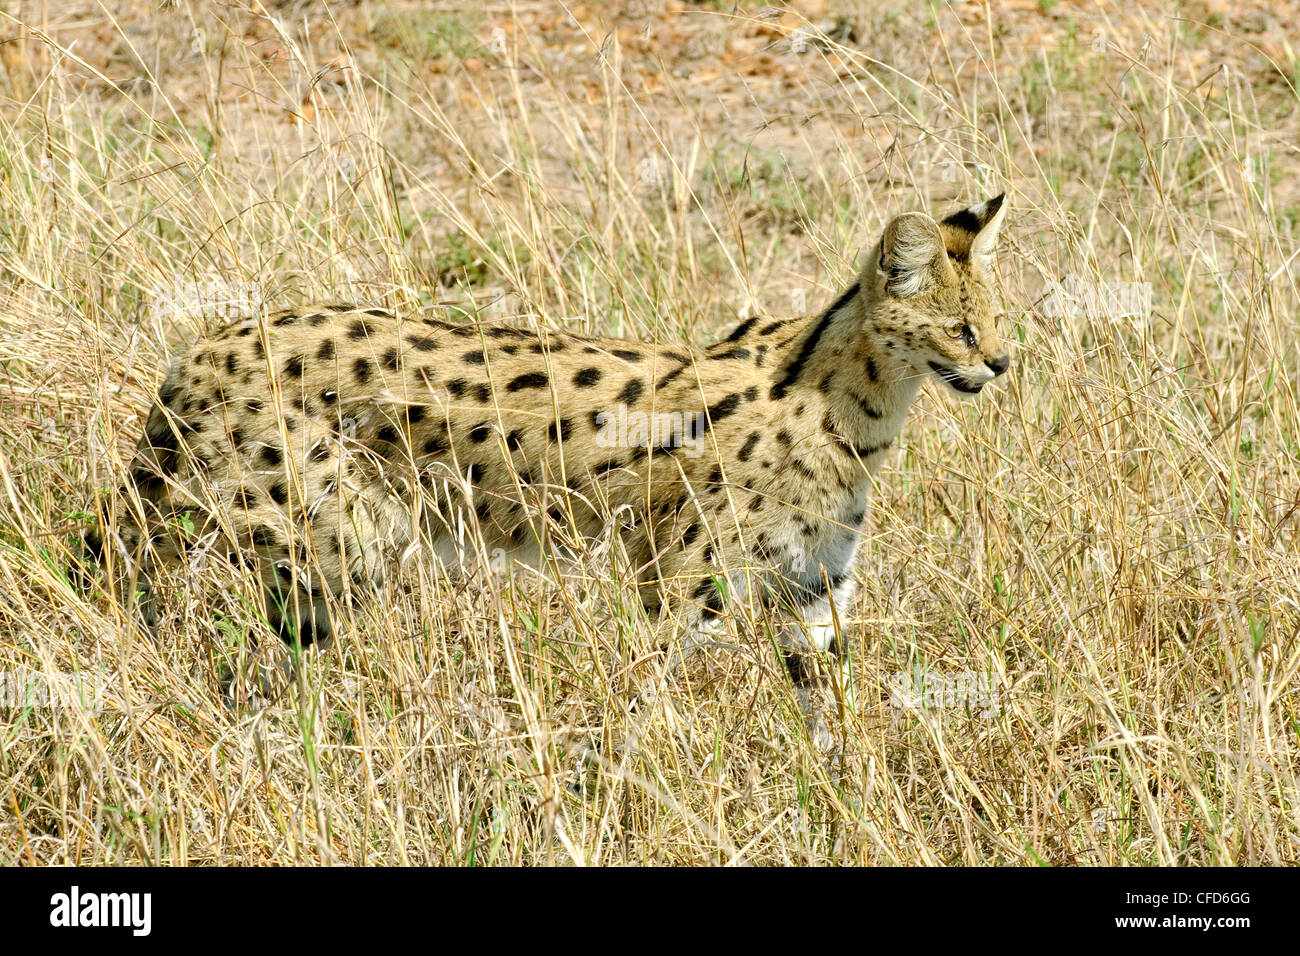 Serval (Felis serval chasse), la réserve de Masai Mara, Kenya, Afrique de l'Est Banque D'Images